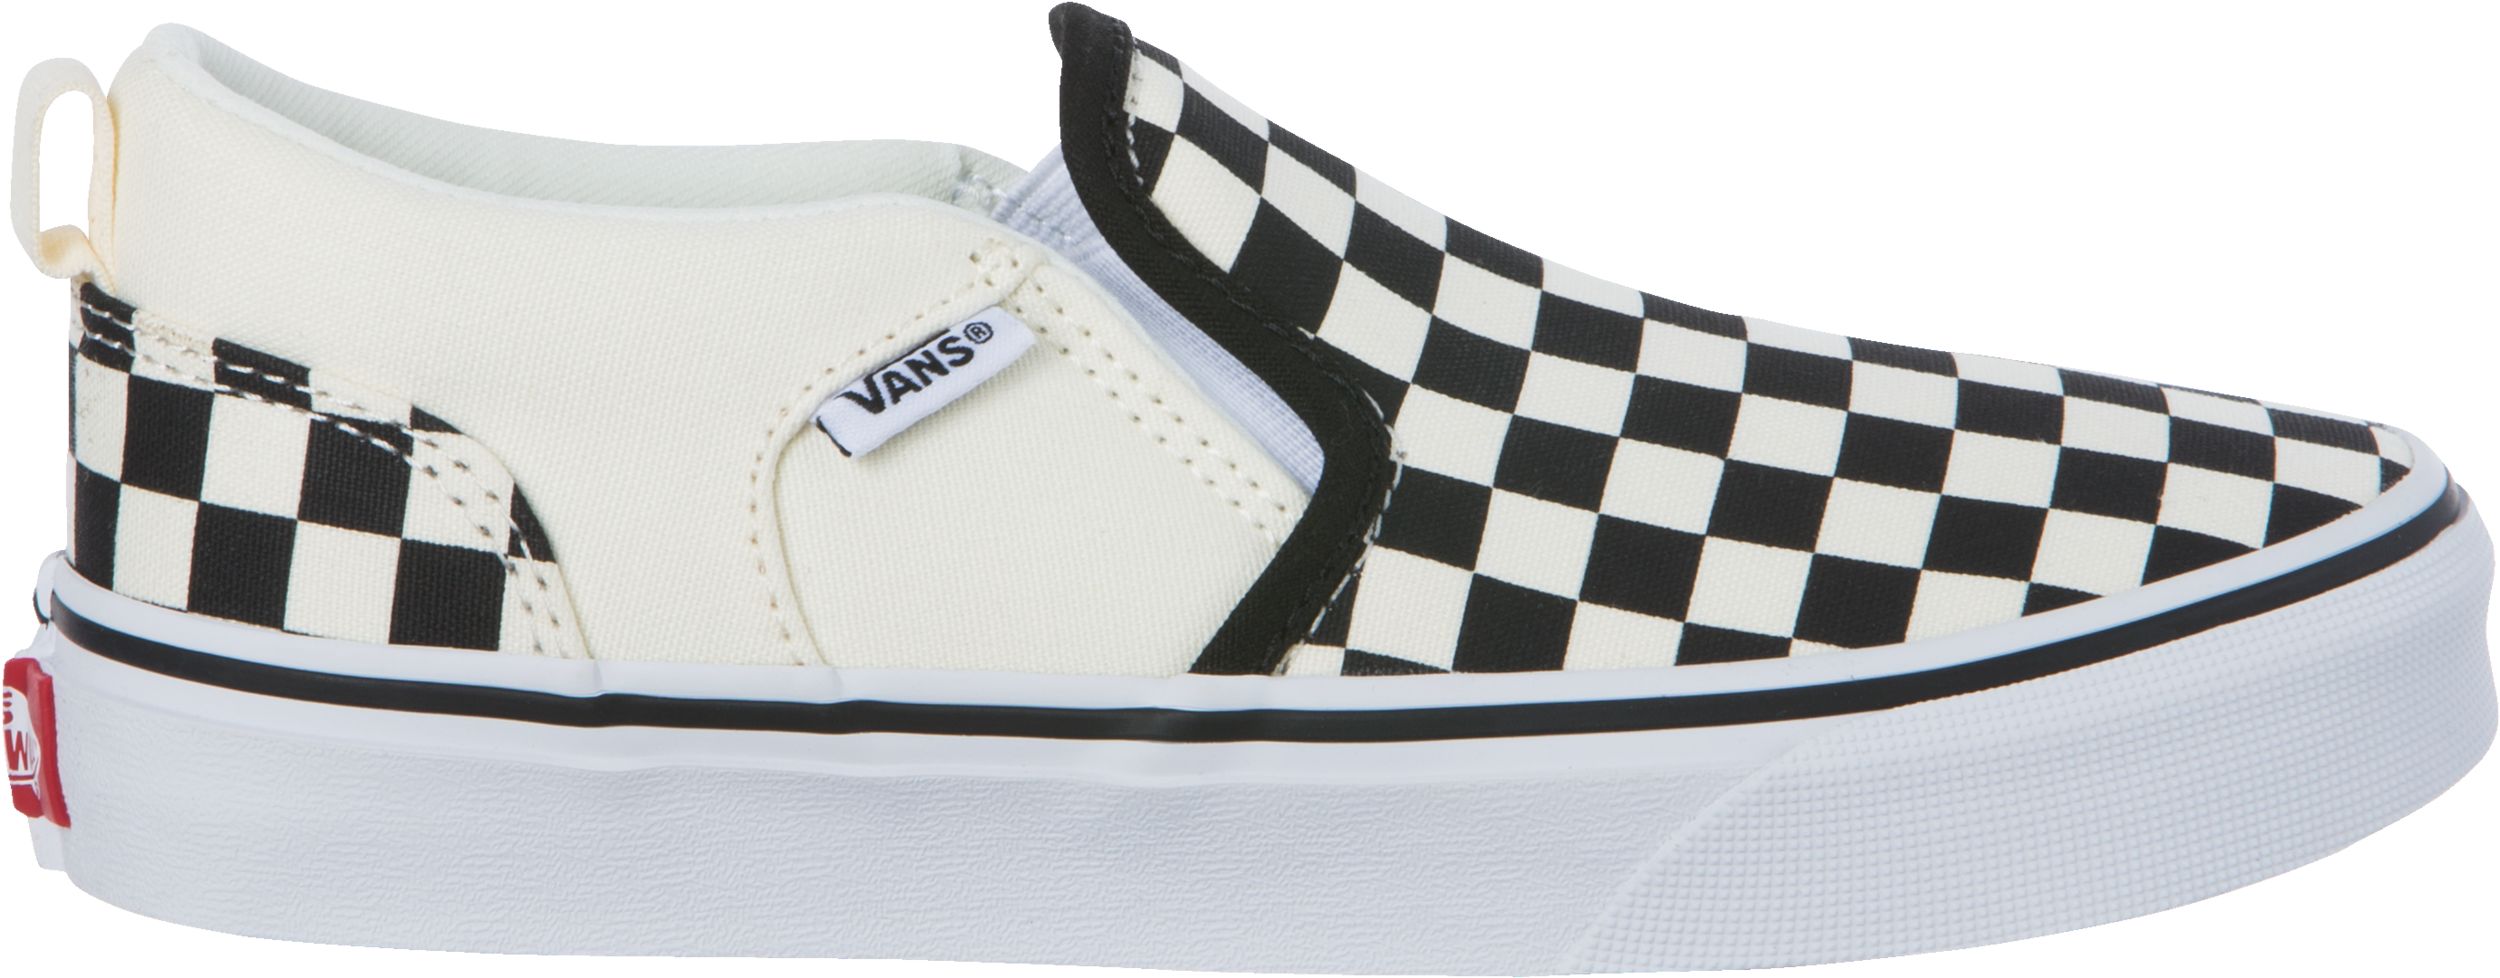 Vans Kids' Pre-School/Grade School Asher Skate Shoes, Sneakers, Girls ...